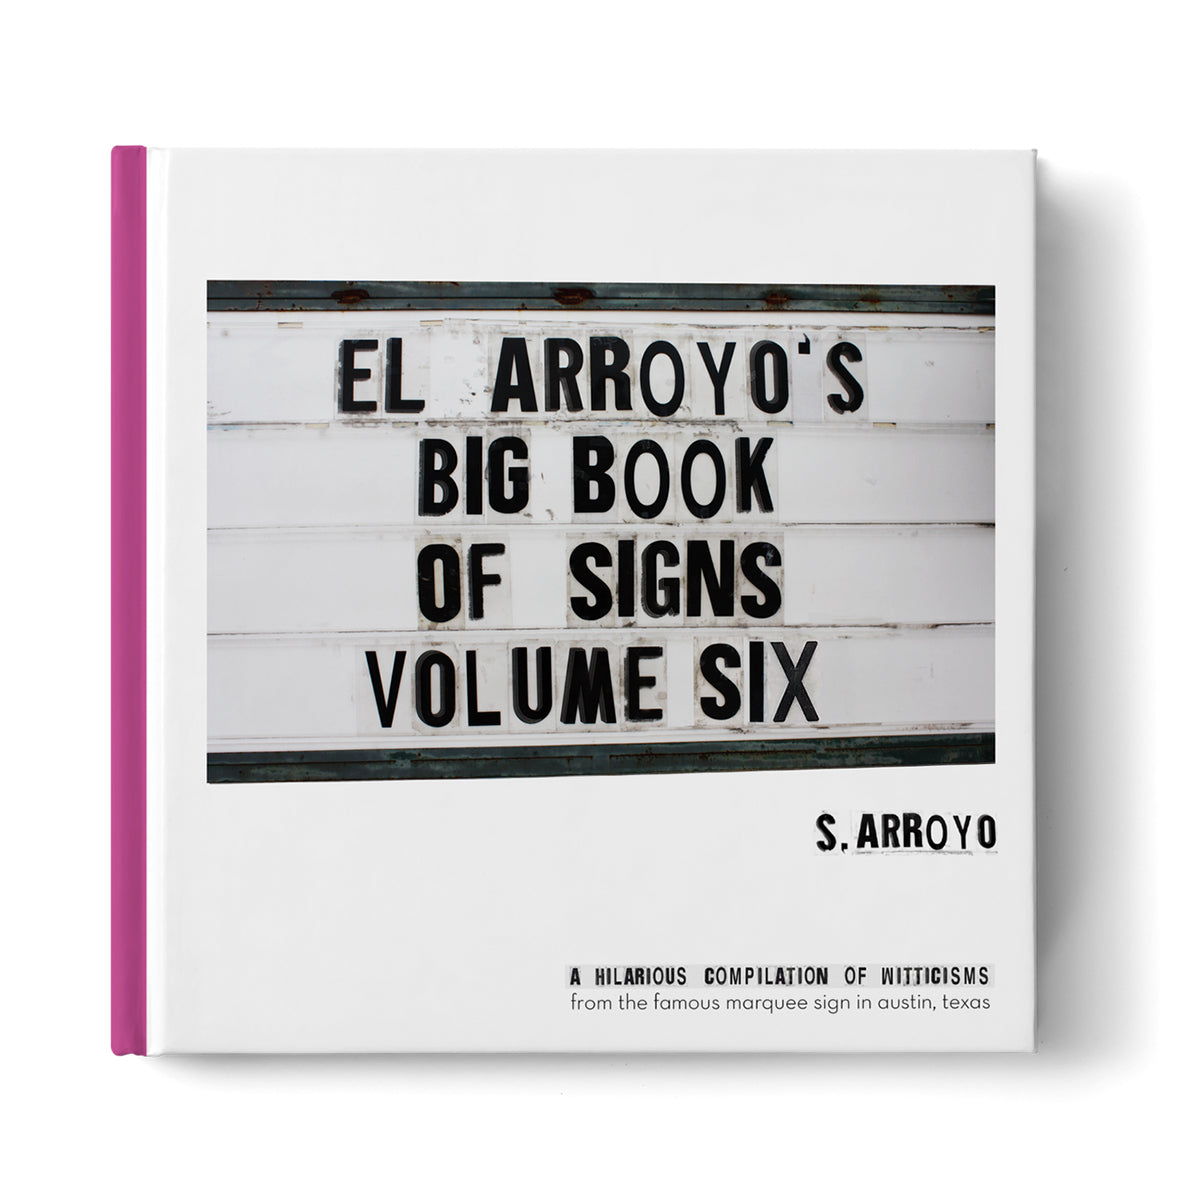 El Arroyo's Big Book of Signs Volume Six